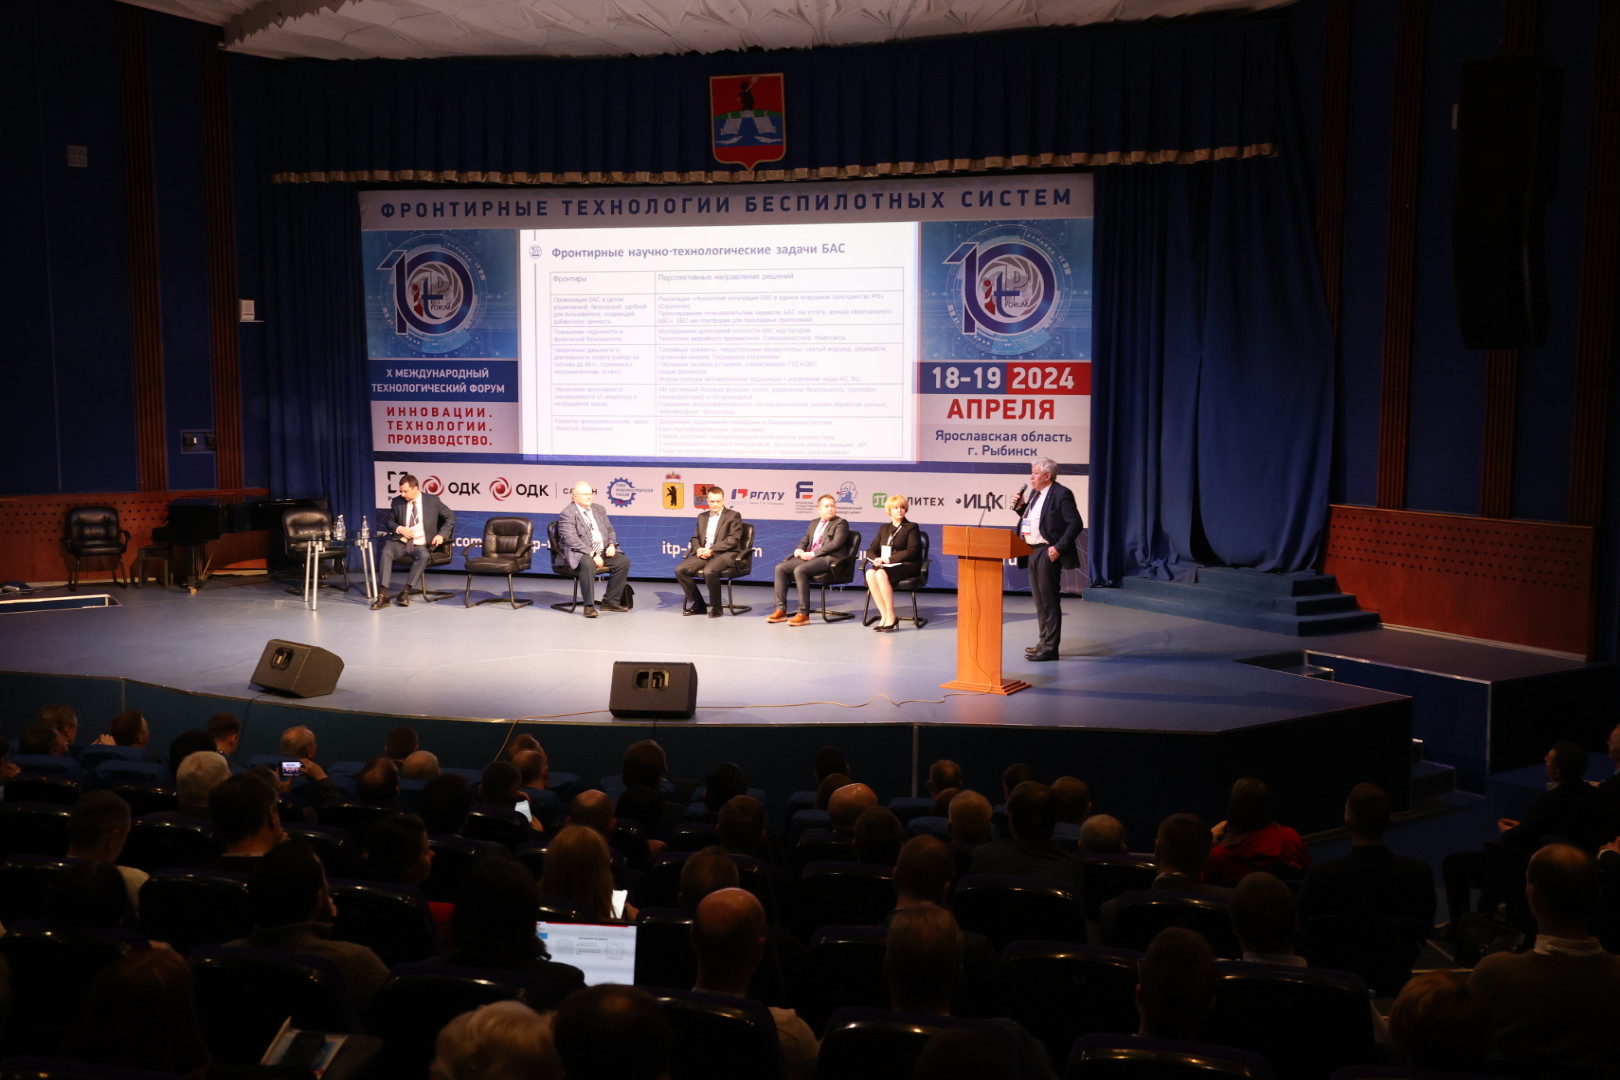 Технологии беспилотных систем обсуждают на международном форуме в Рыбинске